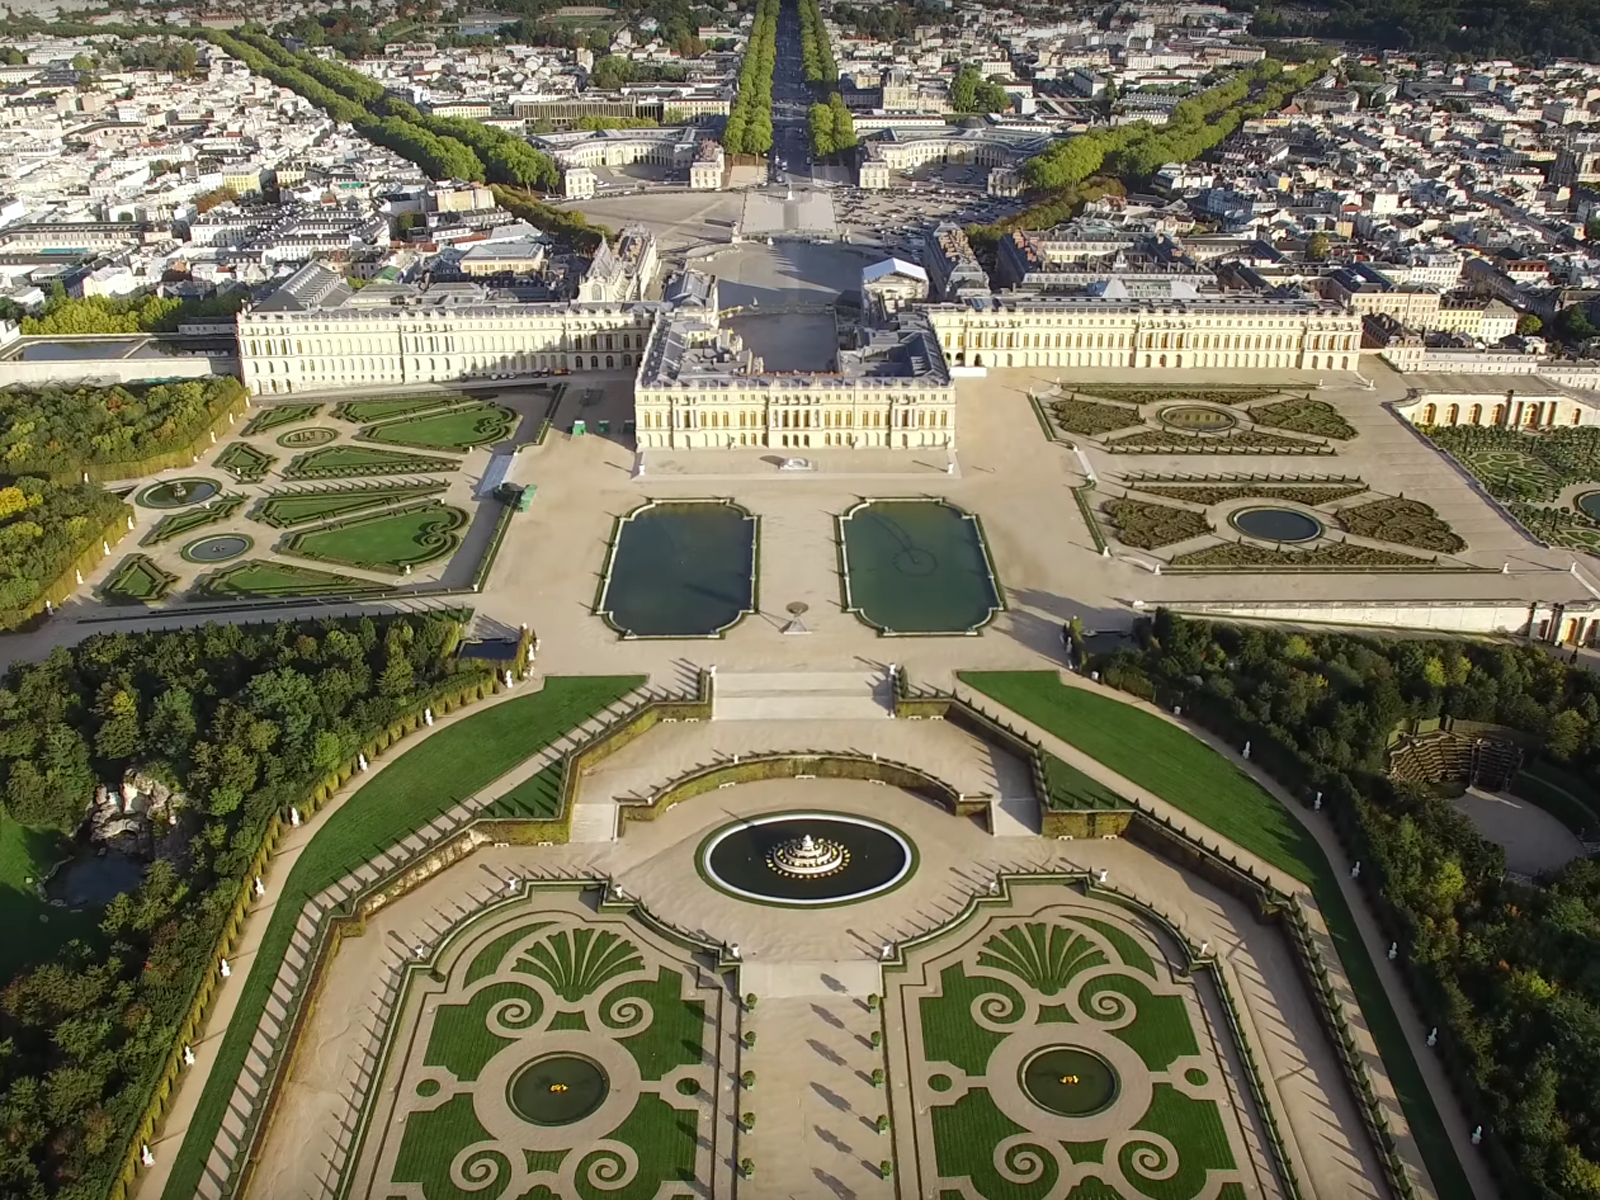 Версаль видео. Версальский дворцово-парковый комплекс Париж. Парк Версаль в Париже. Парковый ансамбль Версаля во Франции. Версаль музей в Париже.